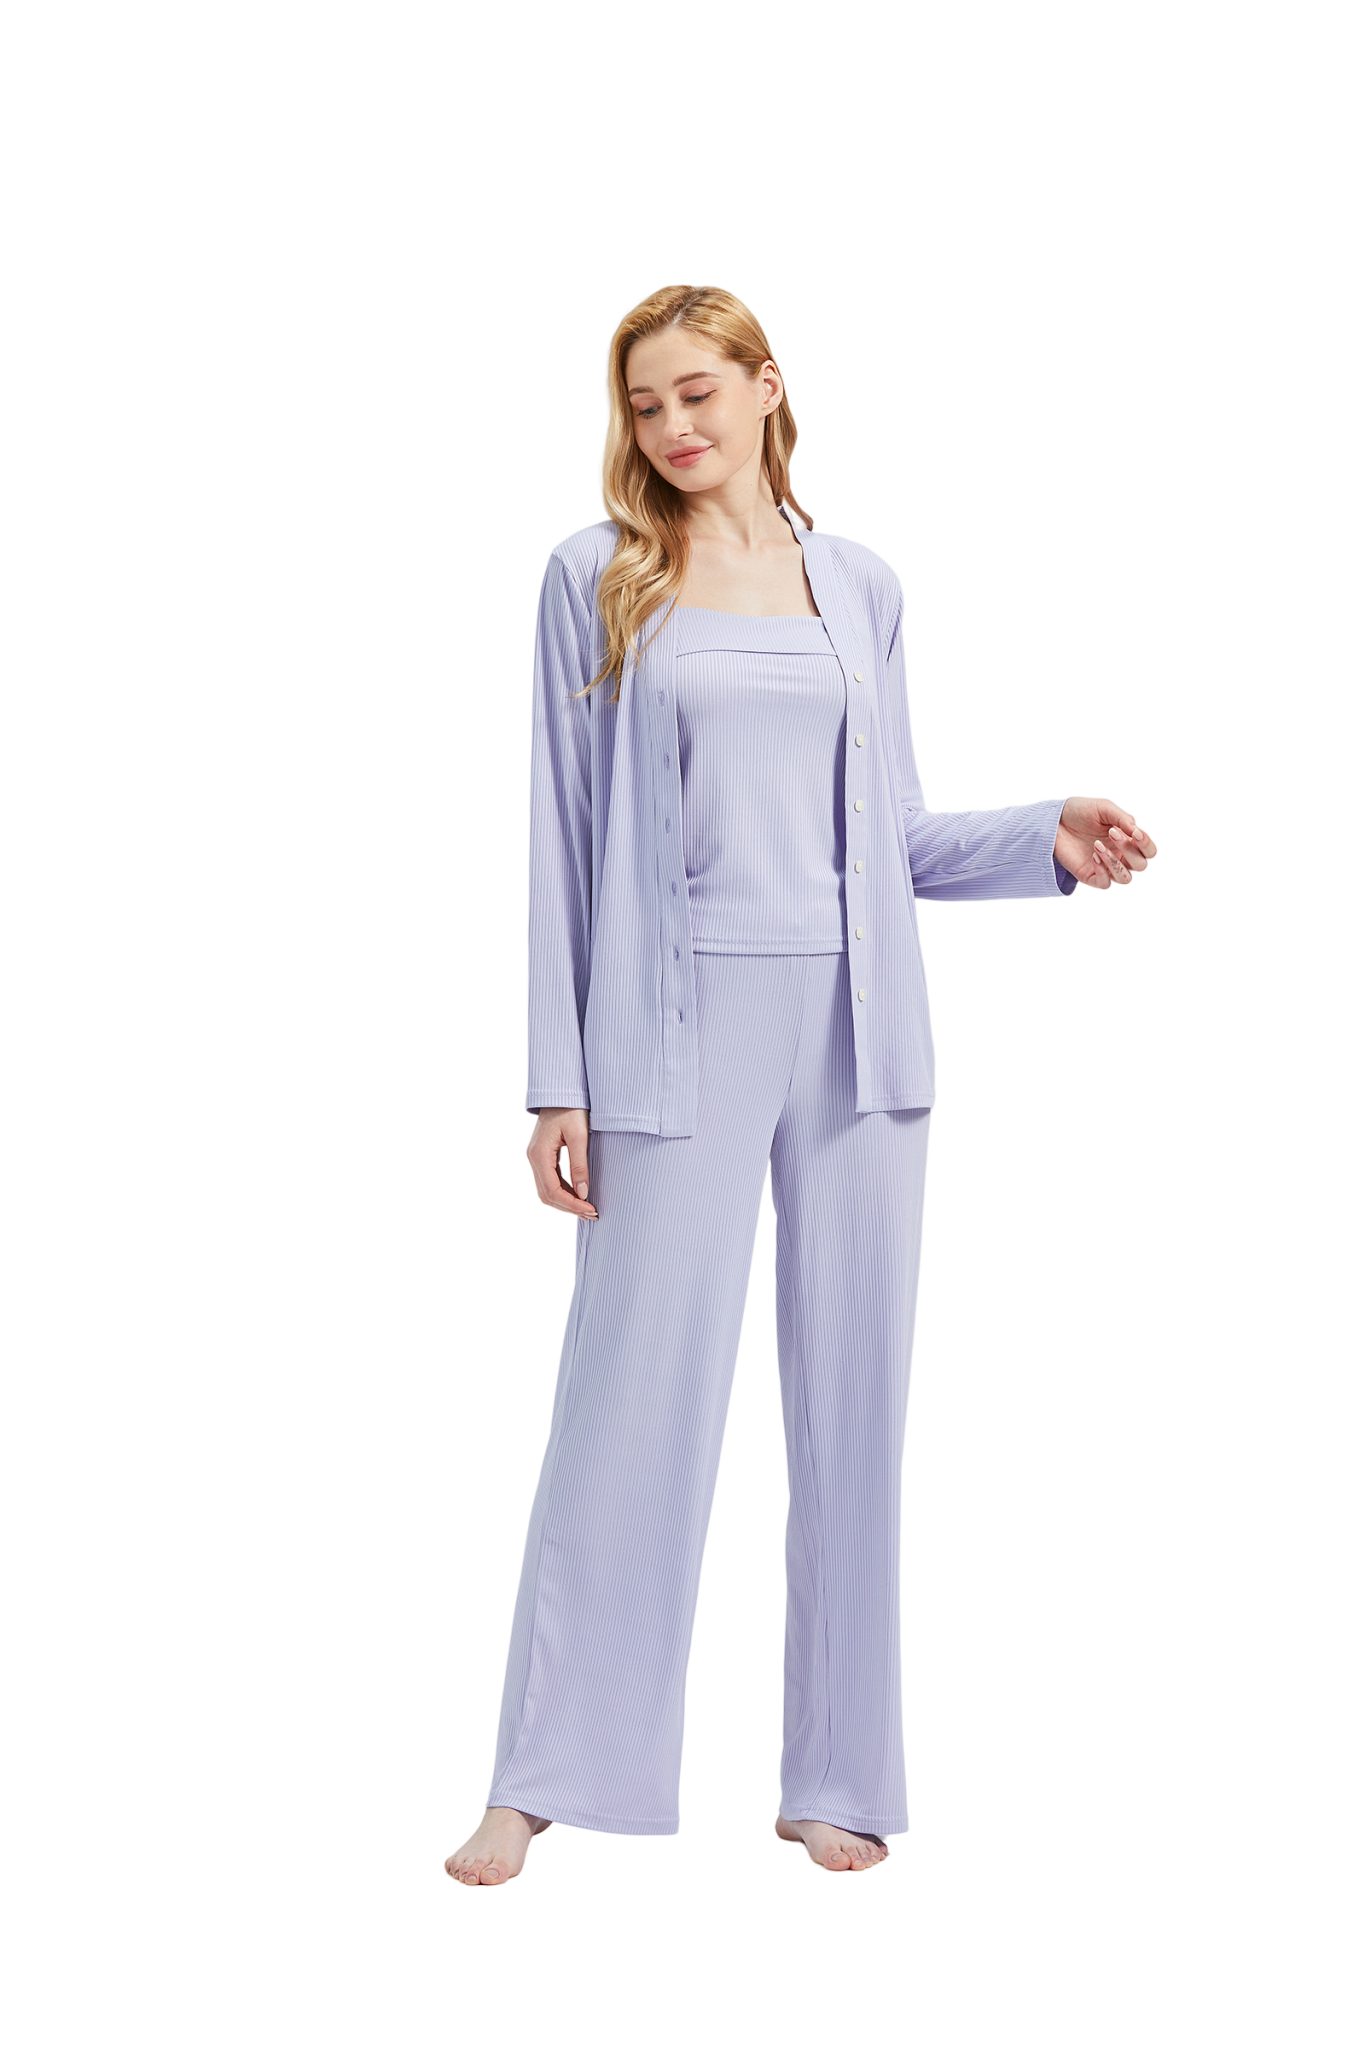 RAIKOU Schlafanzug Damen Pyjama-Set Damenwäsche V-Ausschnitt (Set, 3 tlg) incl.Jacket Top Hose Lila